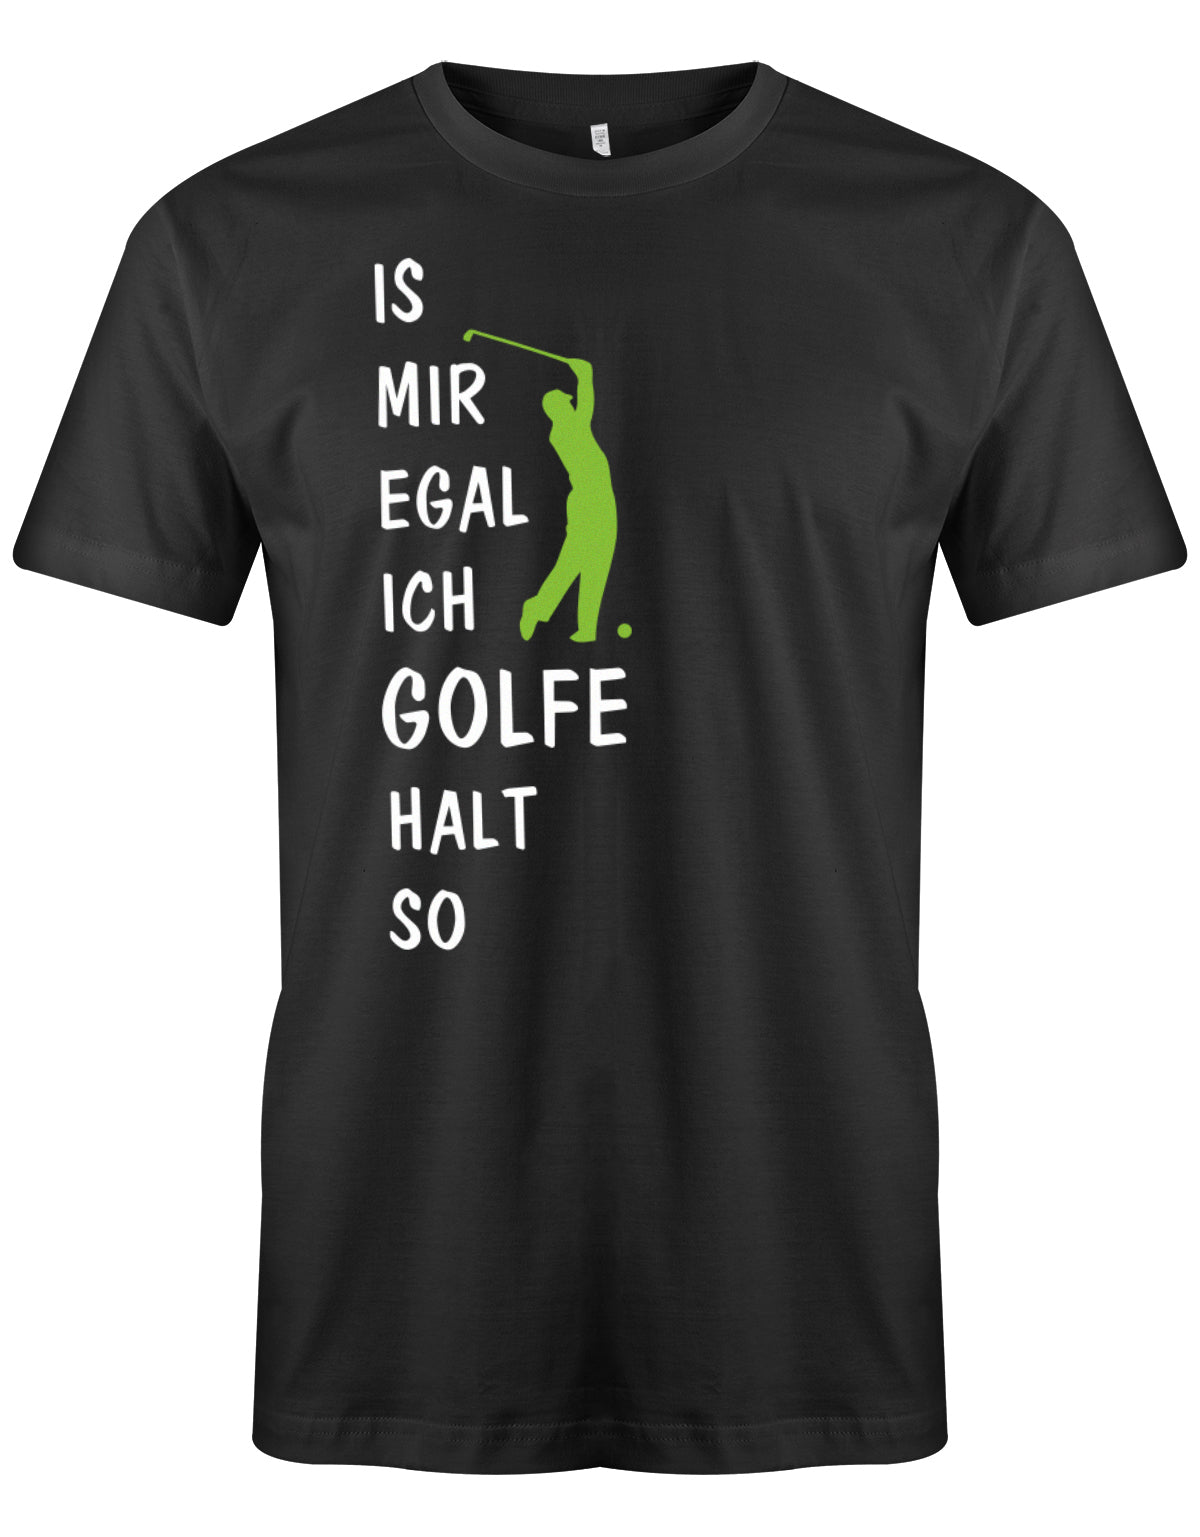 herren-shirt-schwarzxjIw341x61x2a